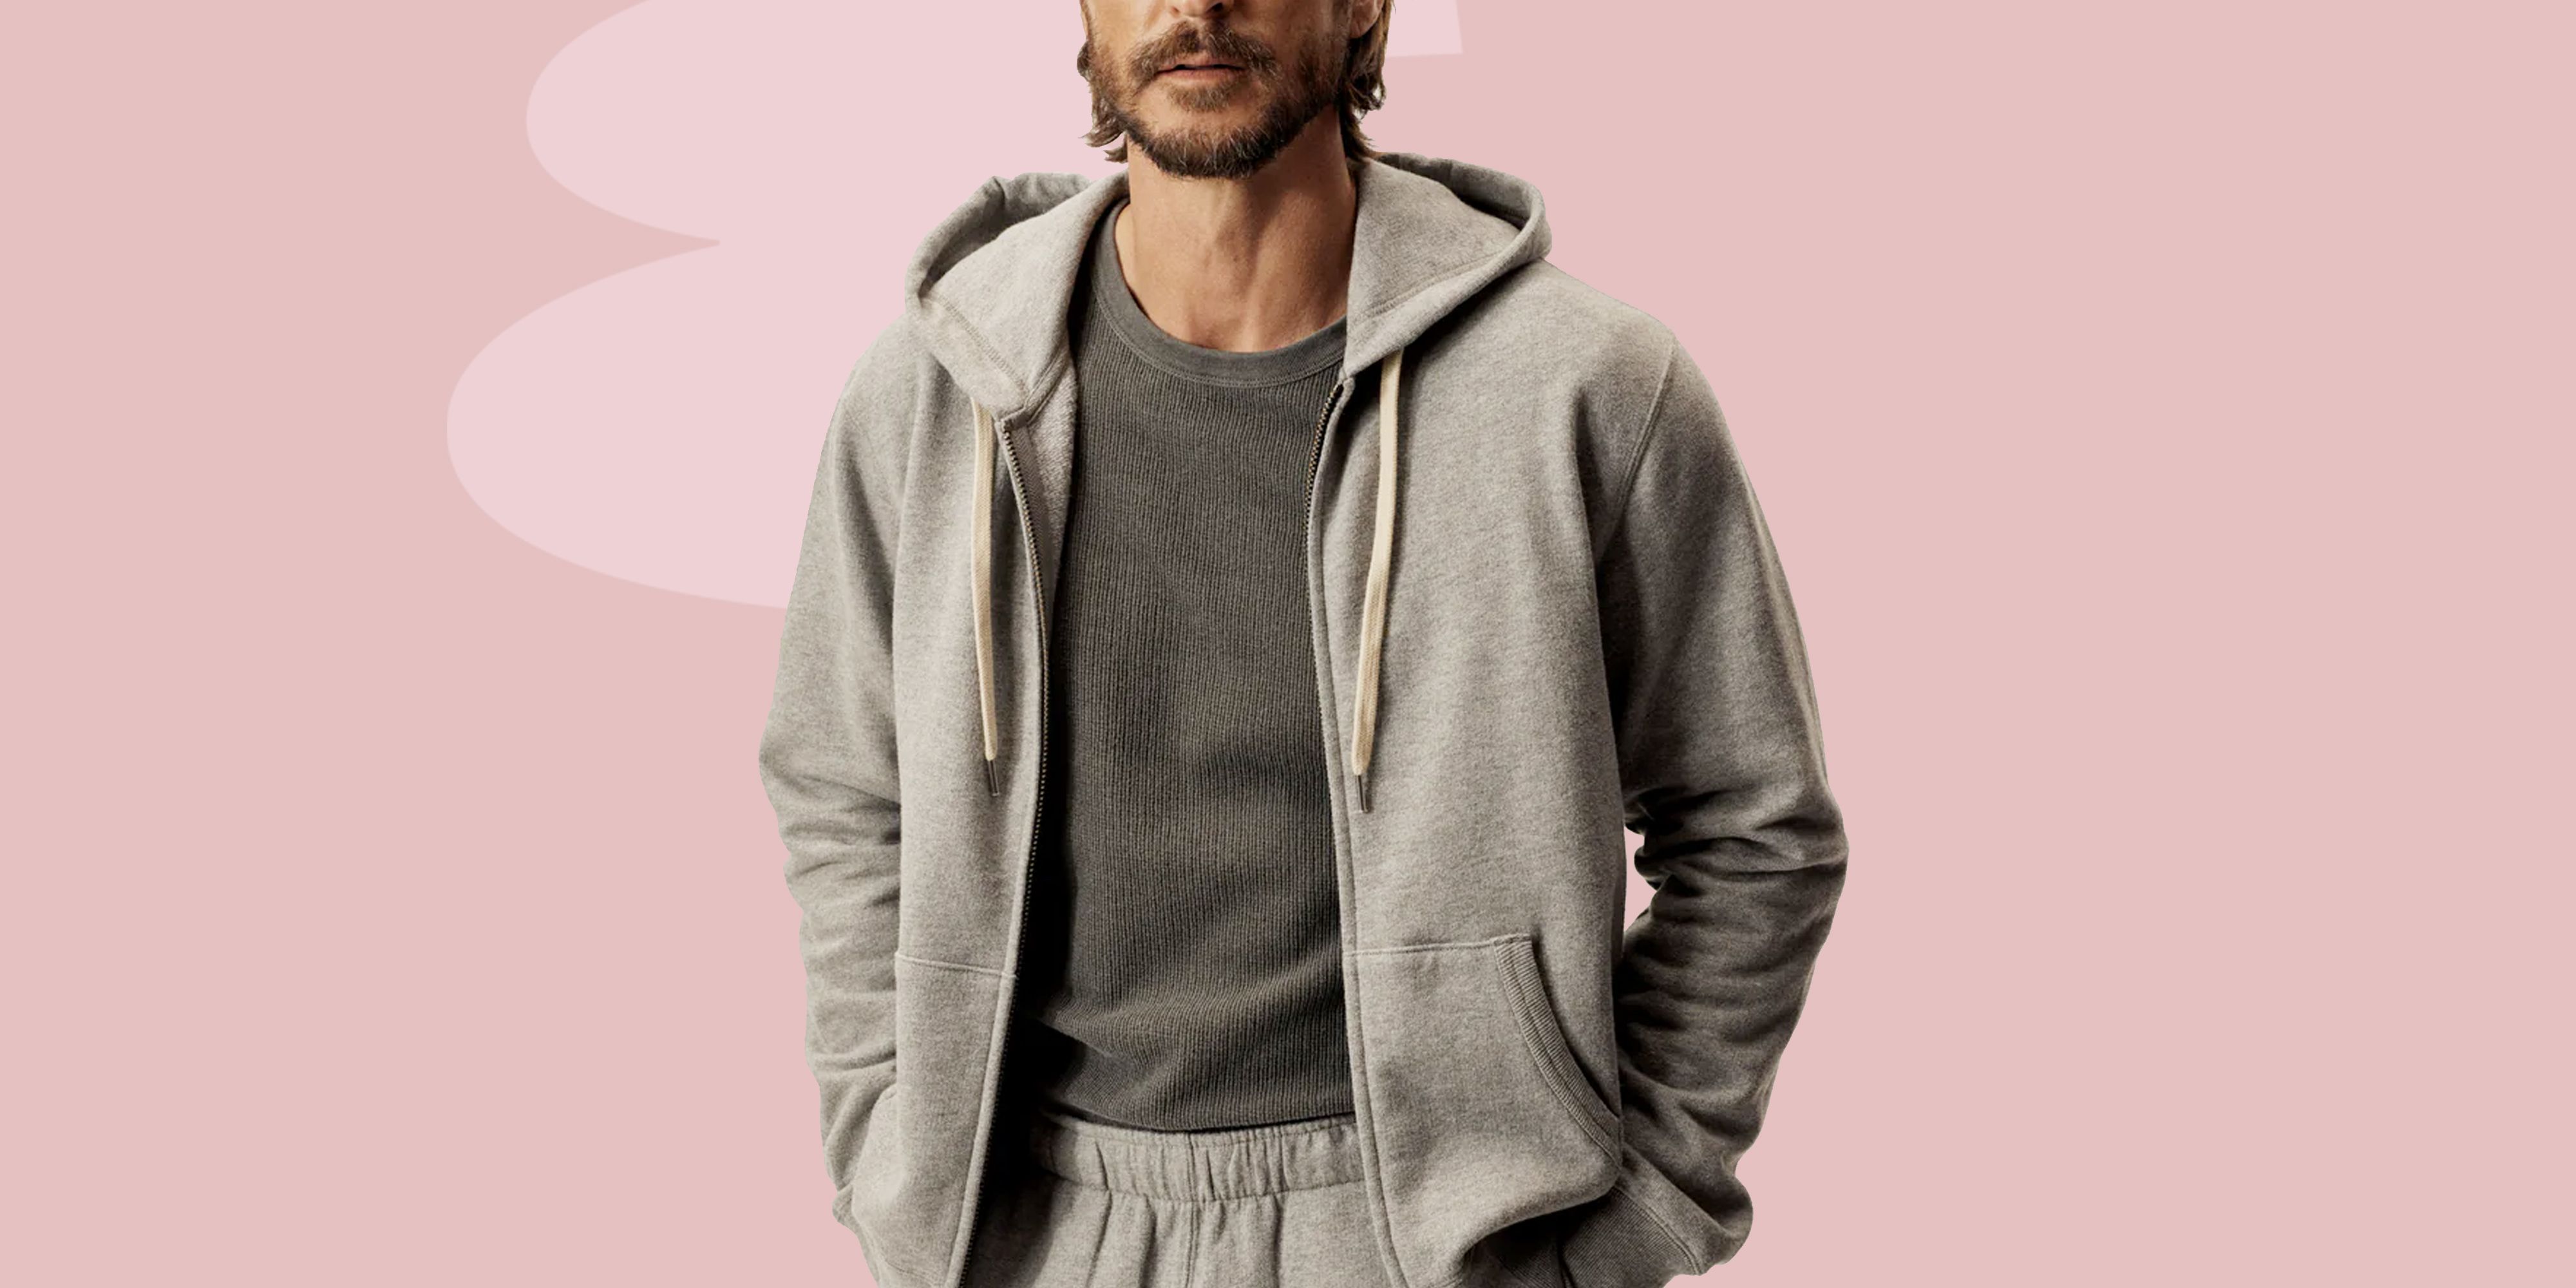 Los Angeles Apparel | Heavy Fleece Zip Up Hooded Sweatshirt for Men in White, Size XL